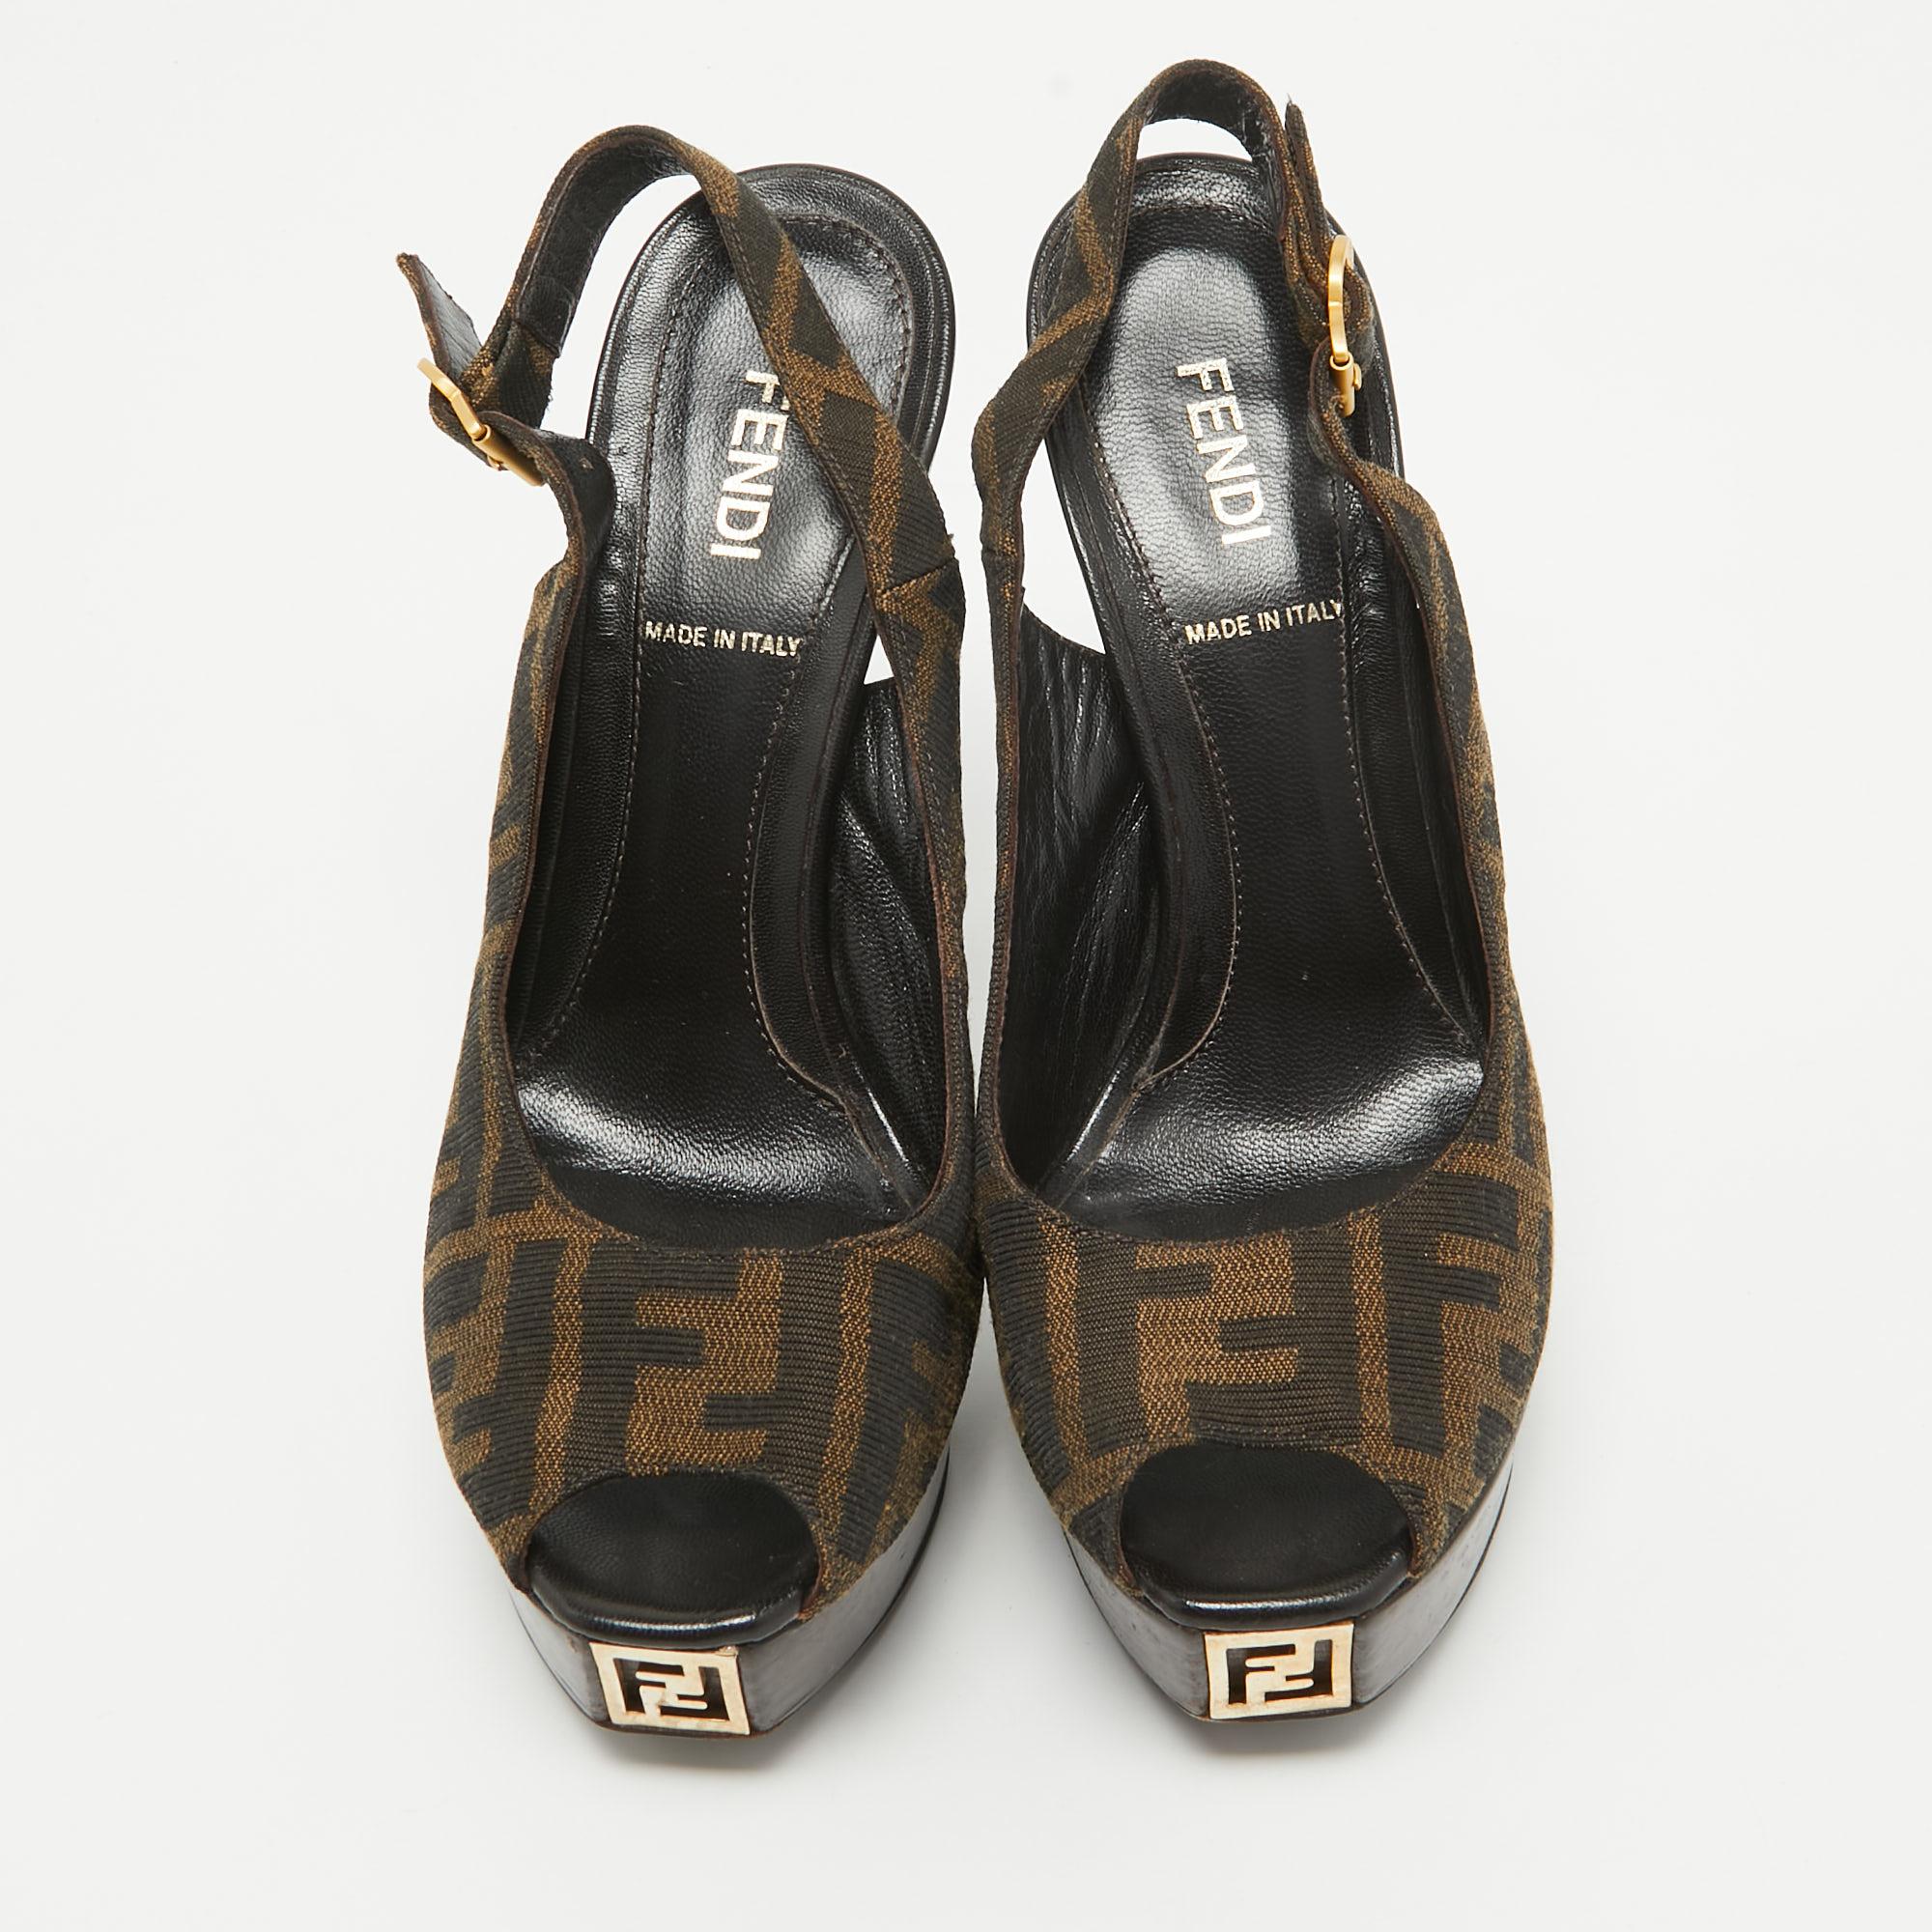 Zeigen Sie einen eleganten Stil mit diesem Paar Pumps. Diese Christian Louboutin Schuhe für Damen sind aus hochwertigen MATERIALEN gefertigt. Sie sind auf robusten Sohlen und schlanken Absätzen aufgebaut.

Enthält: Original-Staubbeutel

